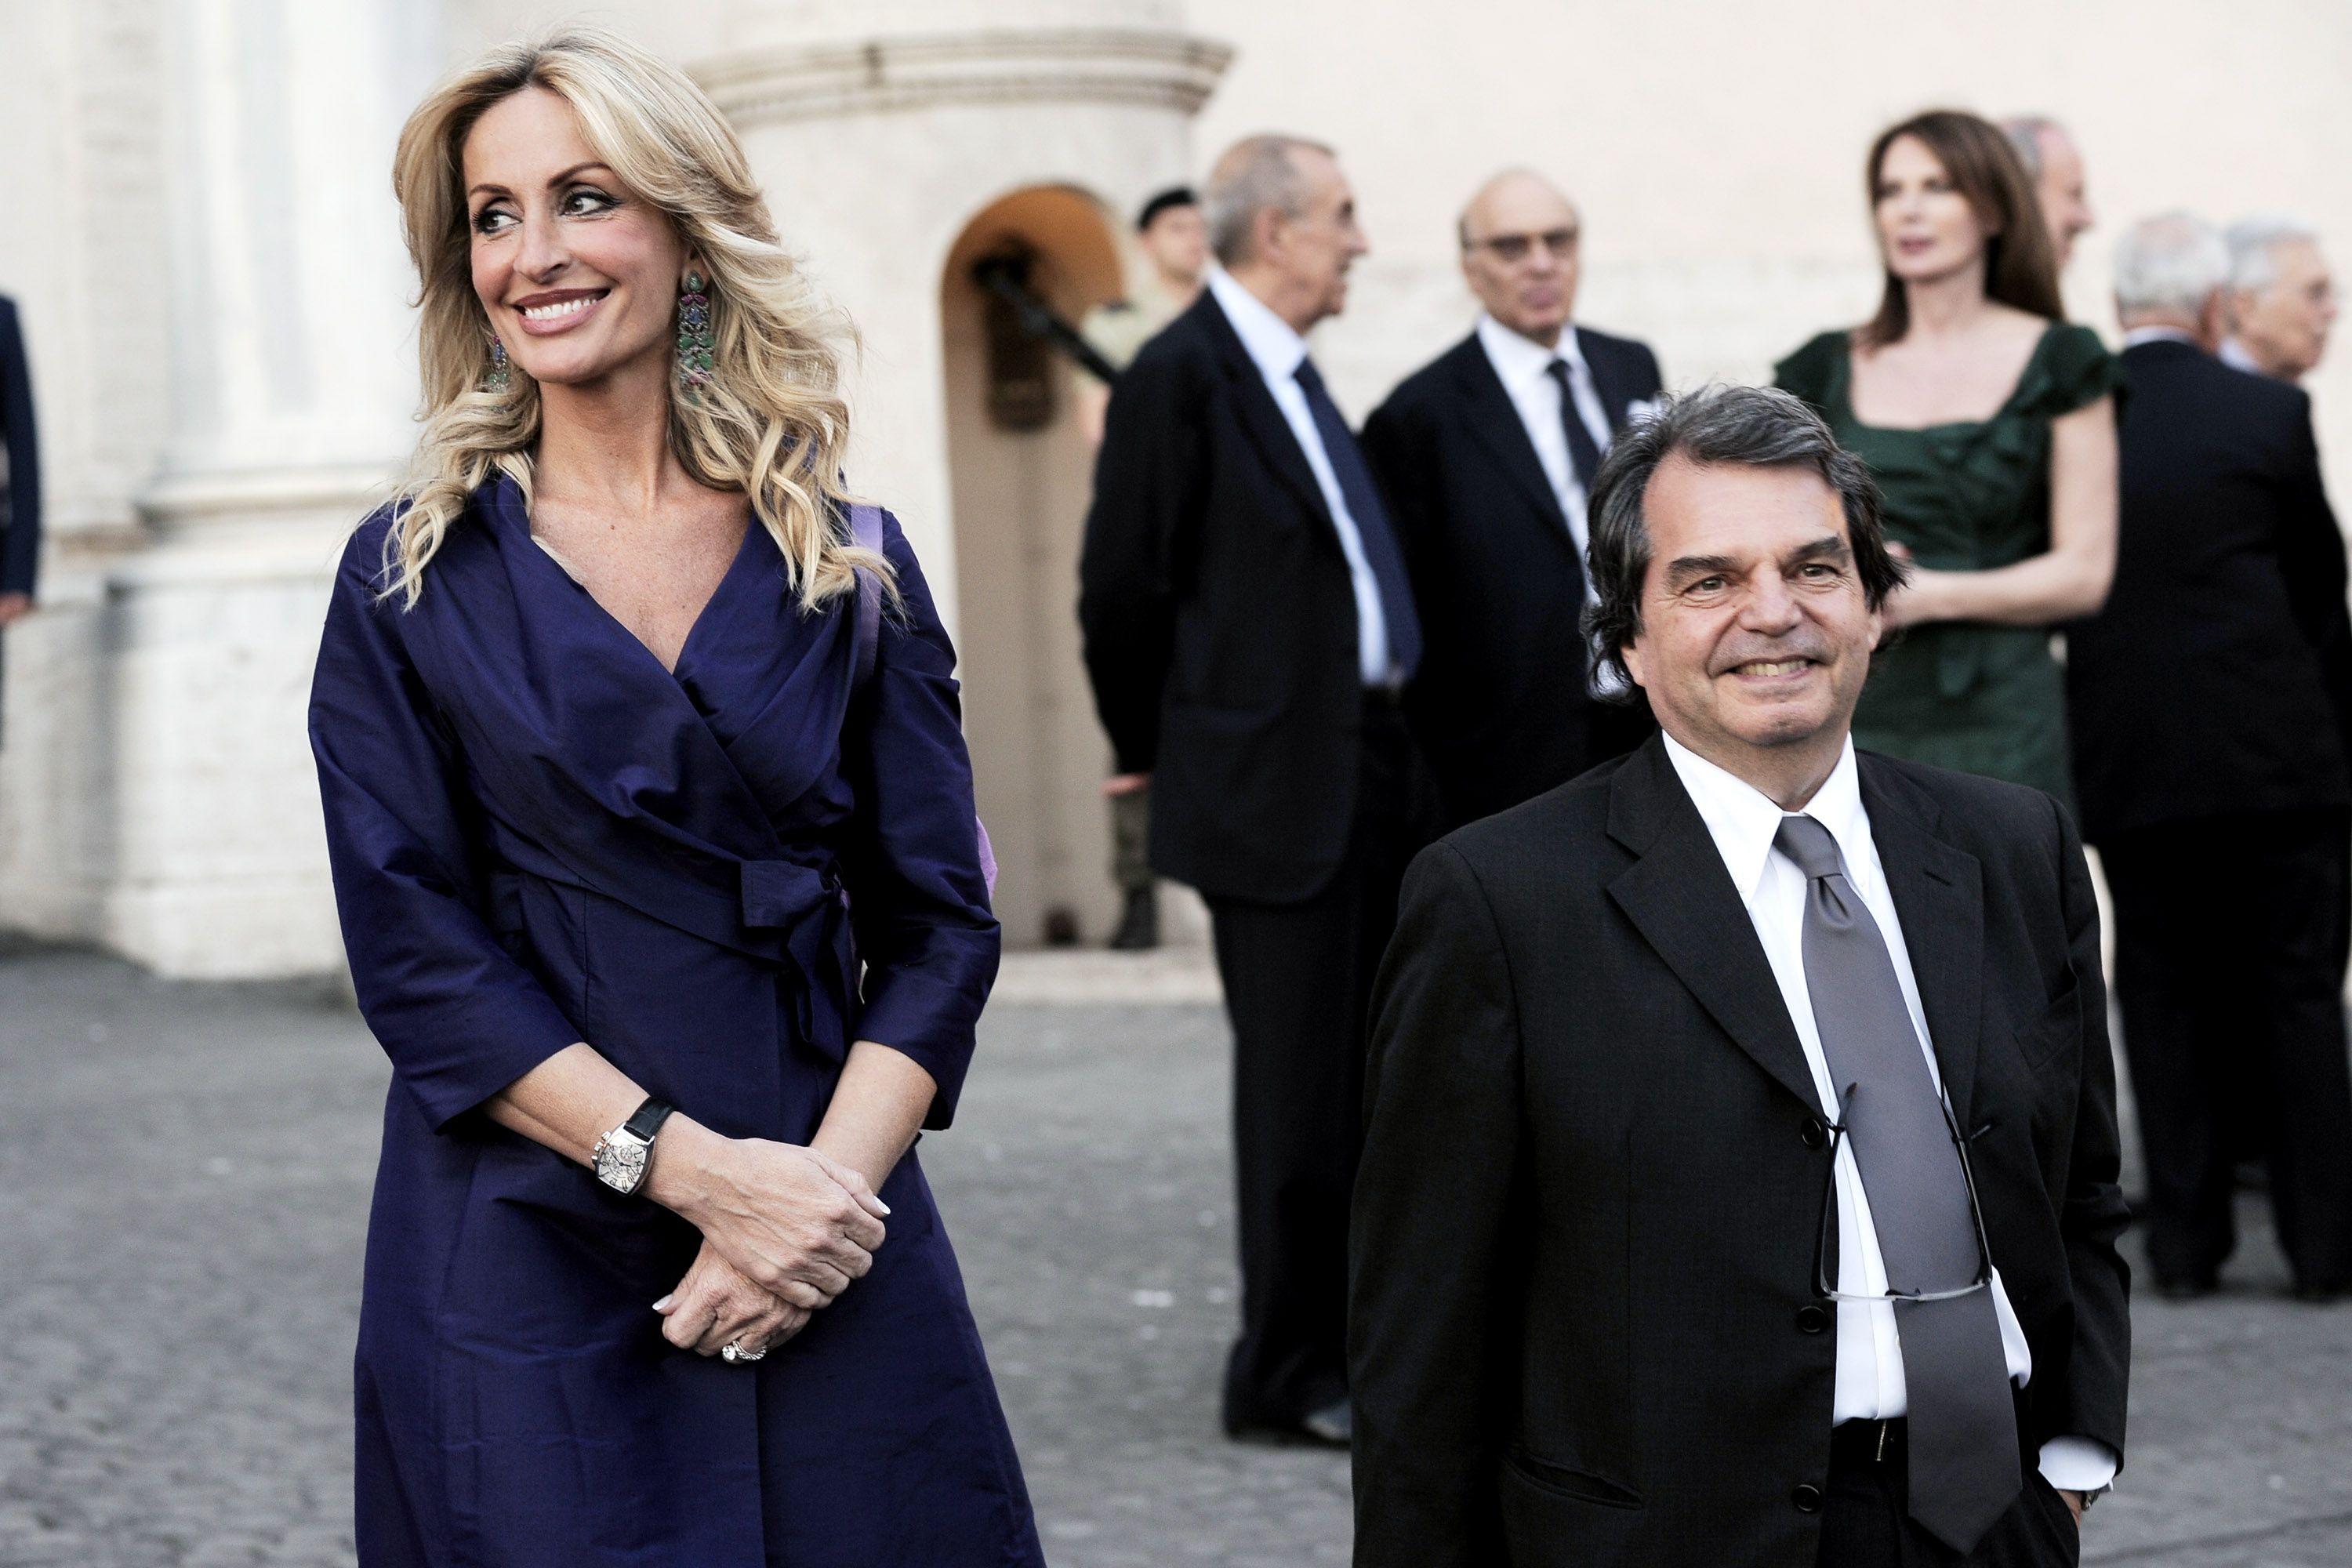 Che cosa hanno in comune Frattini, Brunetta, Putin e Hollande? - immagine 4